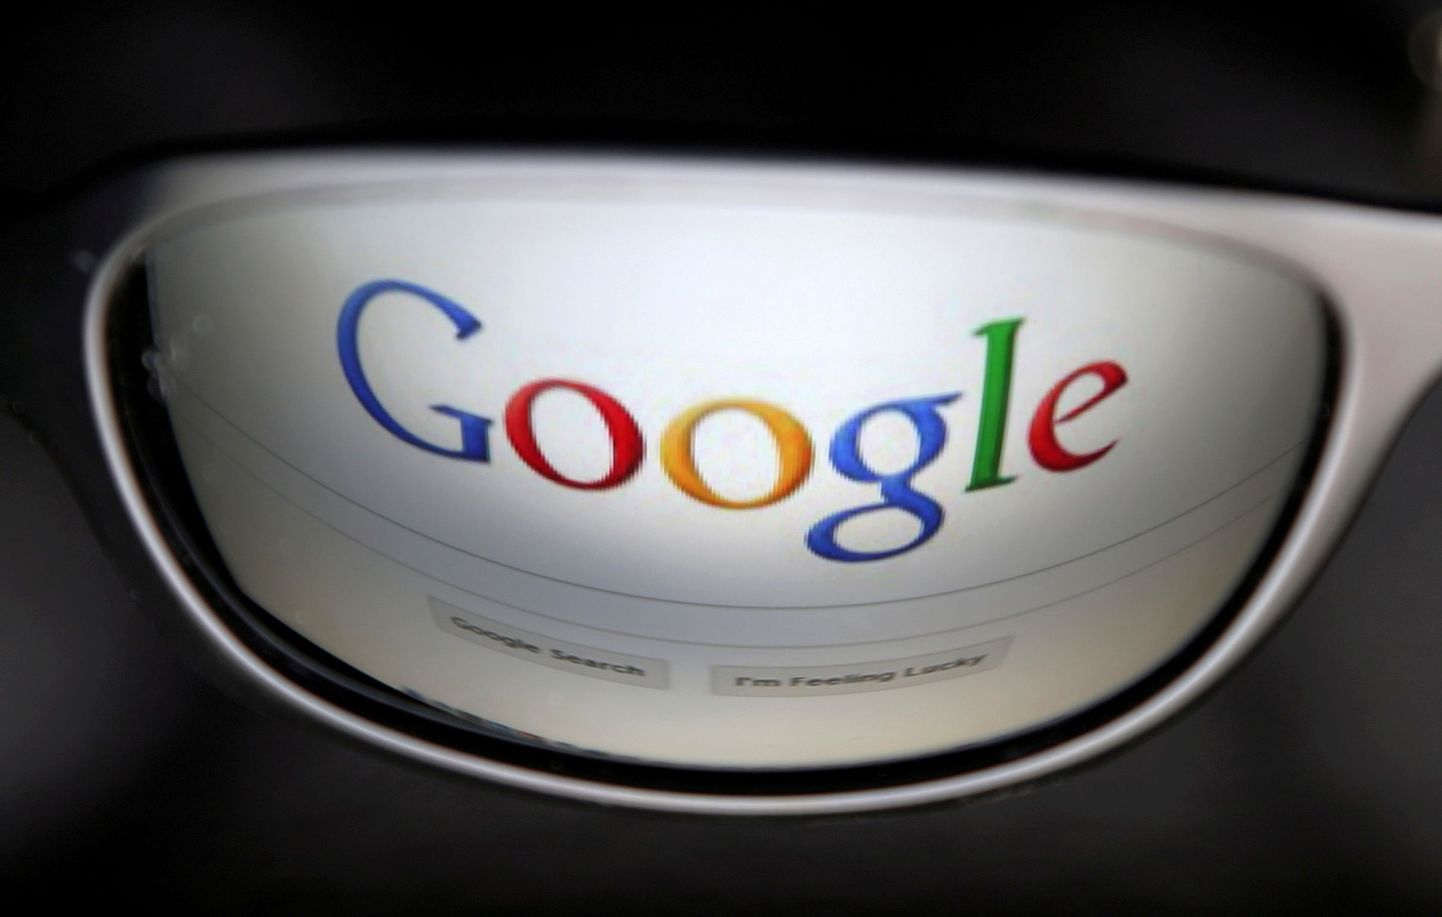 Google'i logo peegeldus päikeseprilli klaasil.